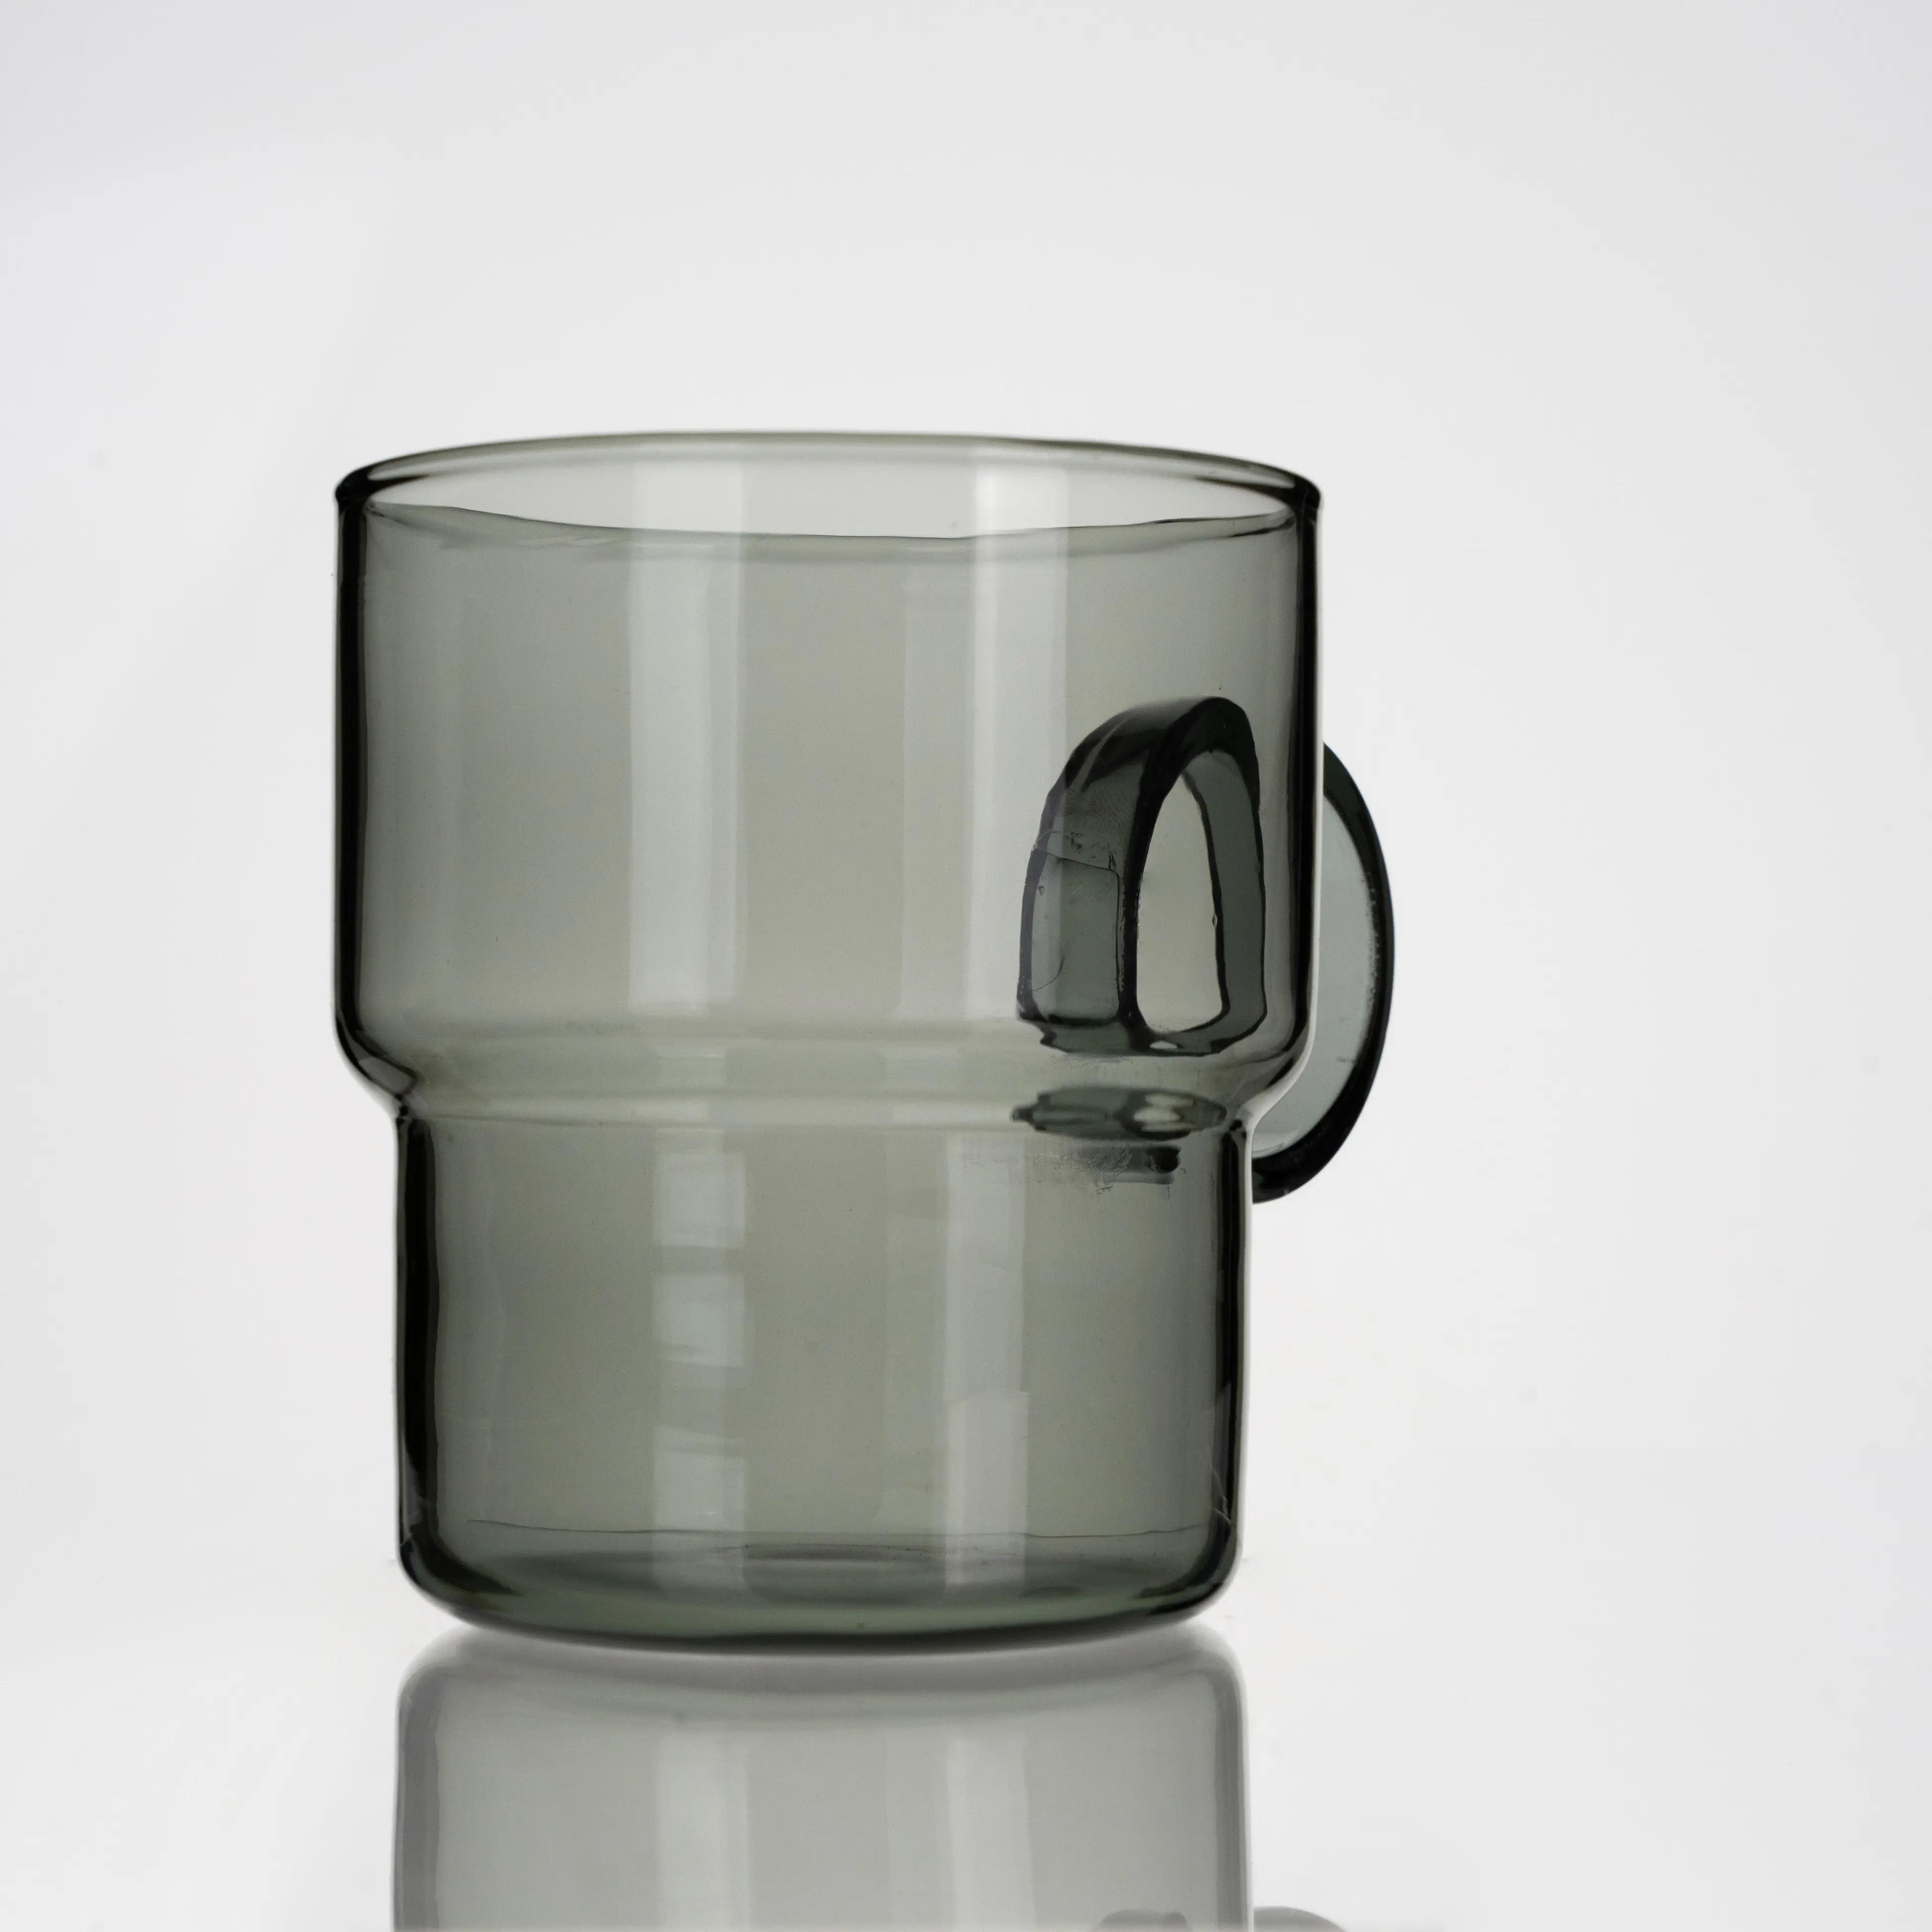 ספל קפה כוס תה זכוכית עם ידית עמידה בצבע חום עגול ועמיד בפני חום ערמה גביע גבוה בורוסיליקט